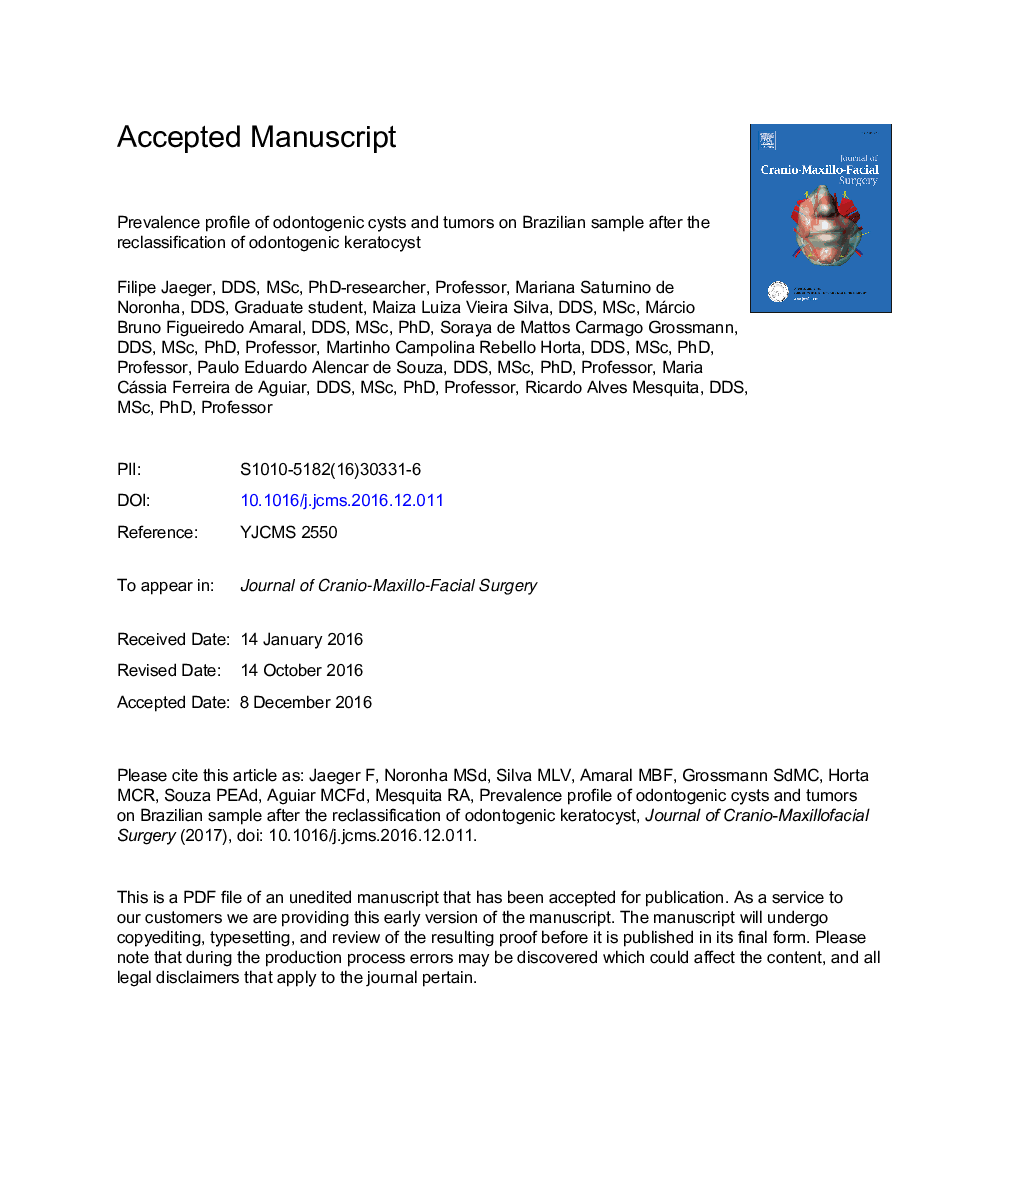 مشخصات شیوع کیست ها و تومورهای ادنتوژنیک بر روی نمونه برزیل پس از طبقه بندی کراتوسیست ادنتوژنیک 